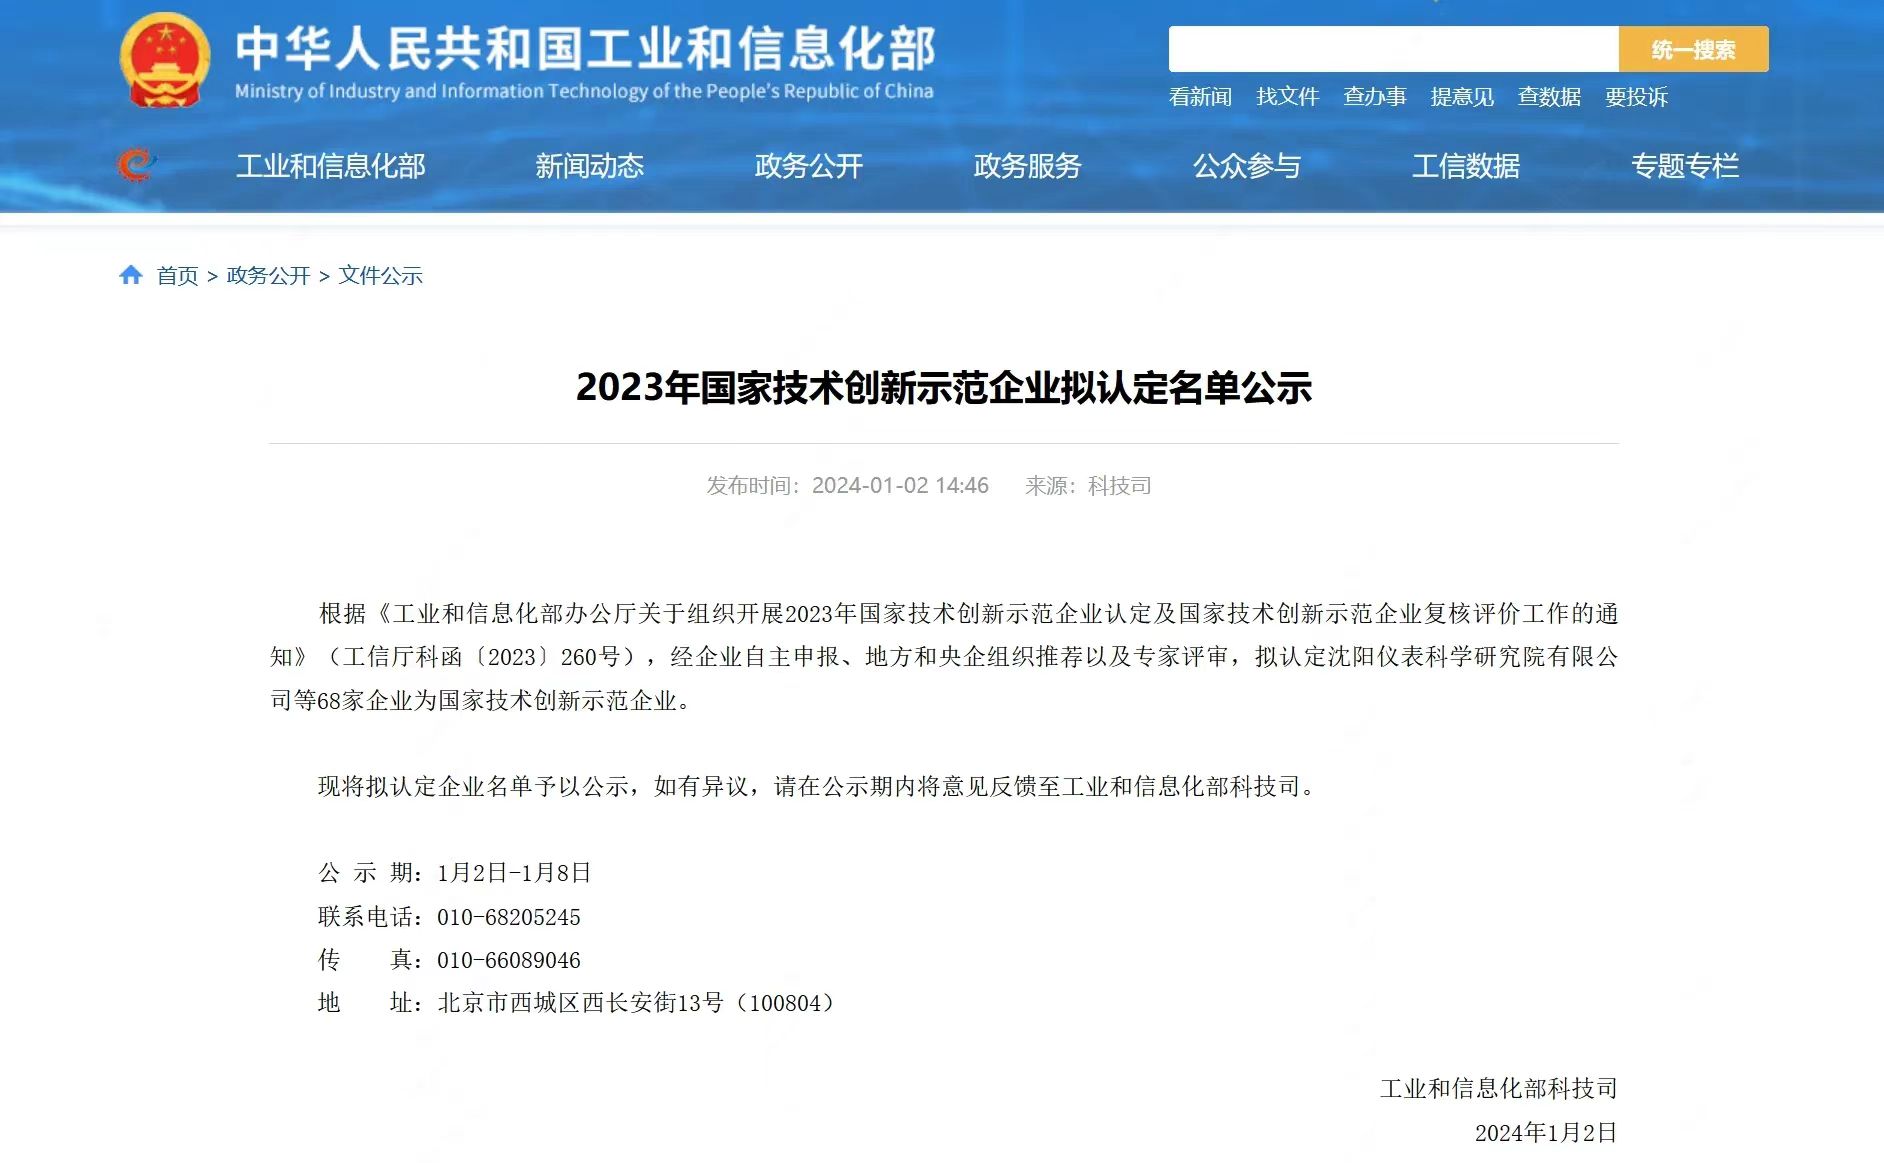 星空体育(中国)官方网站荣获“国家技术创新示范企业”称号